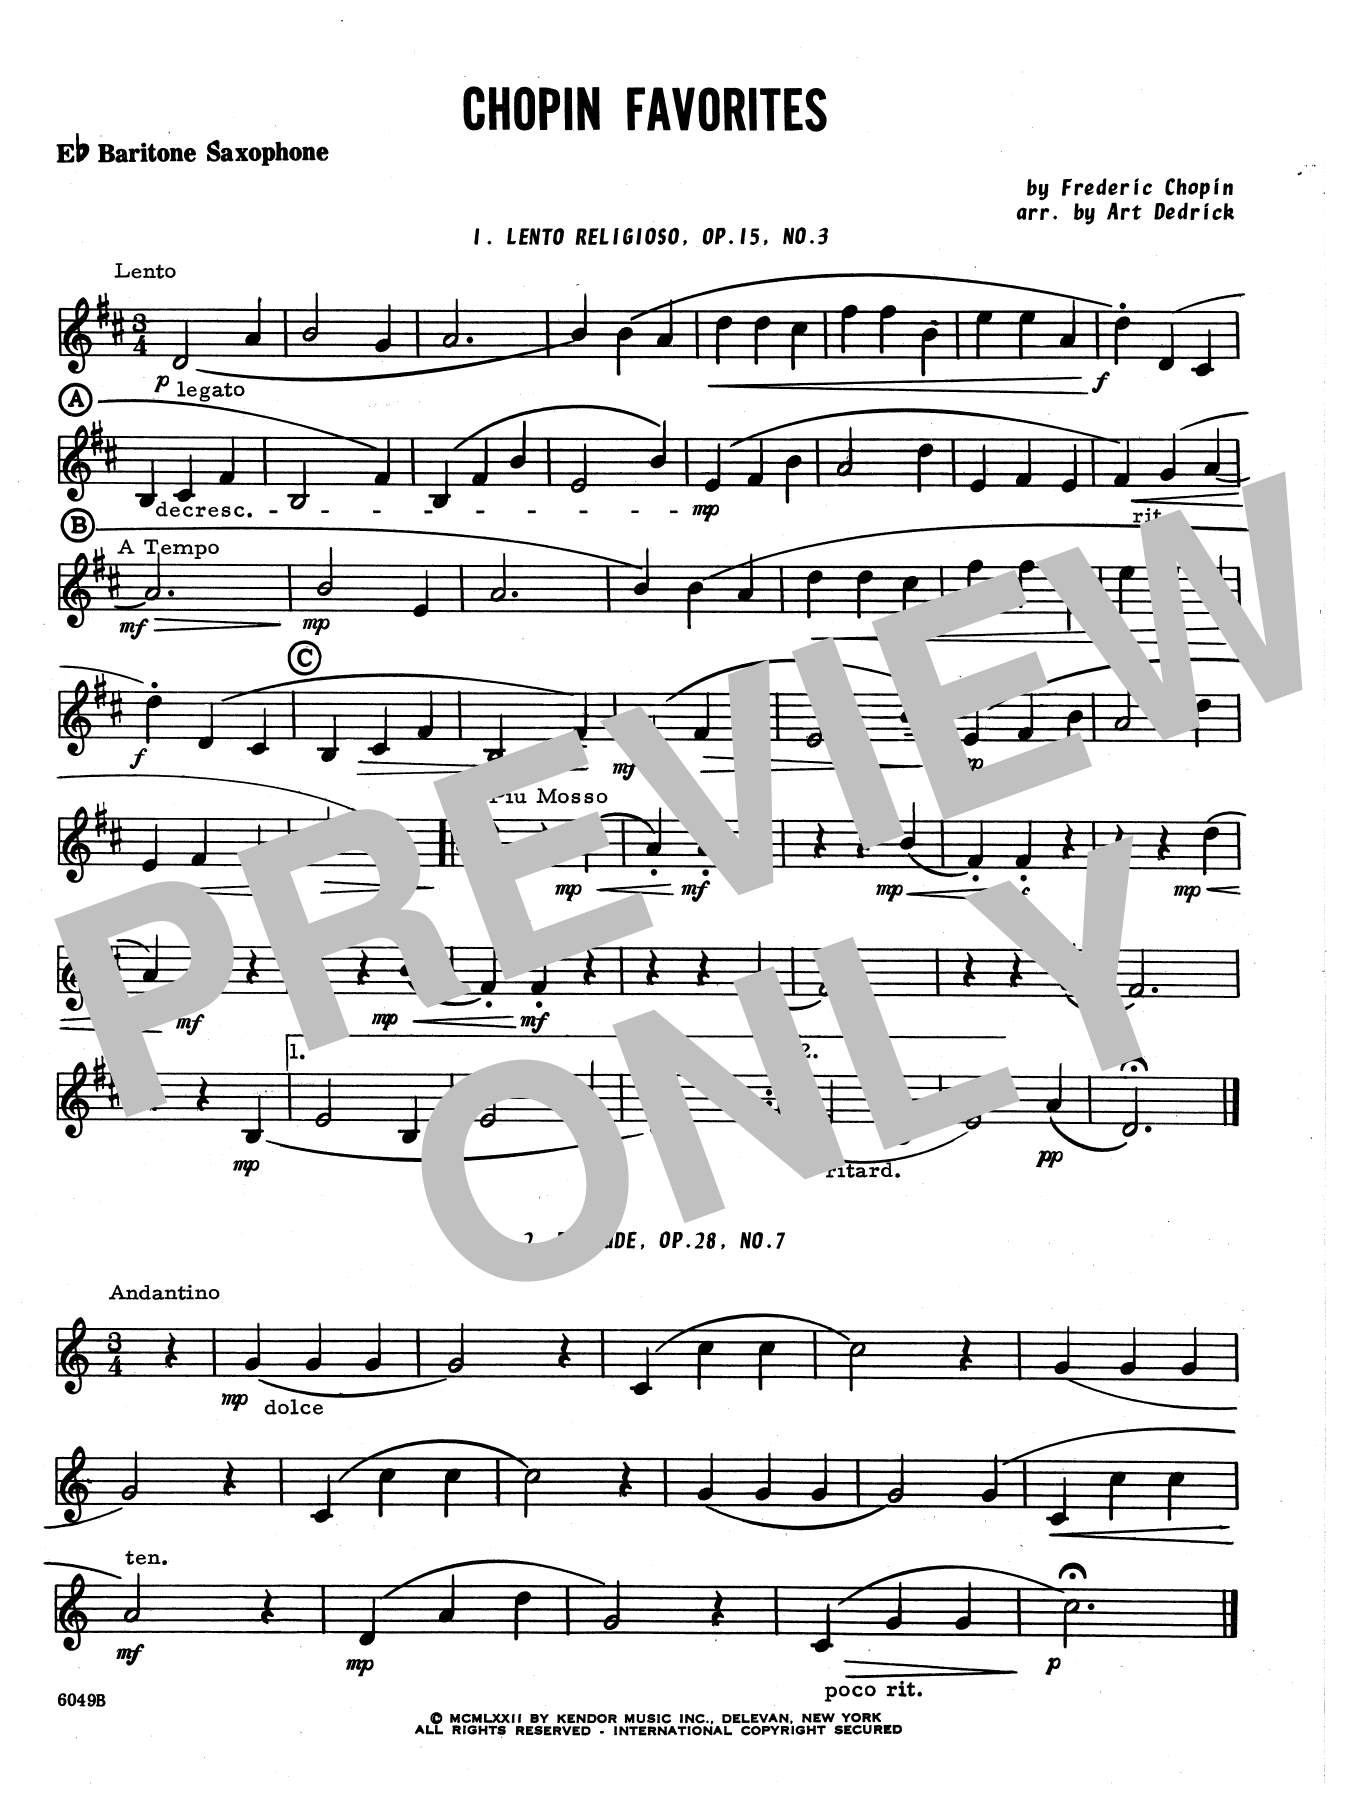 Download Art Dedrick Chopin Favorites - Eb Baritone Saxophon Sheet Music